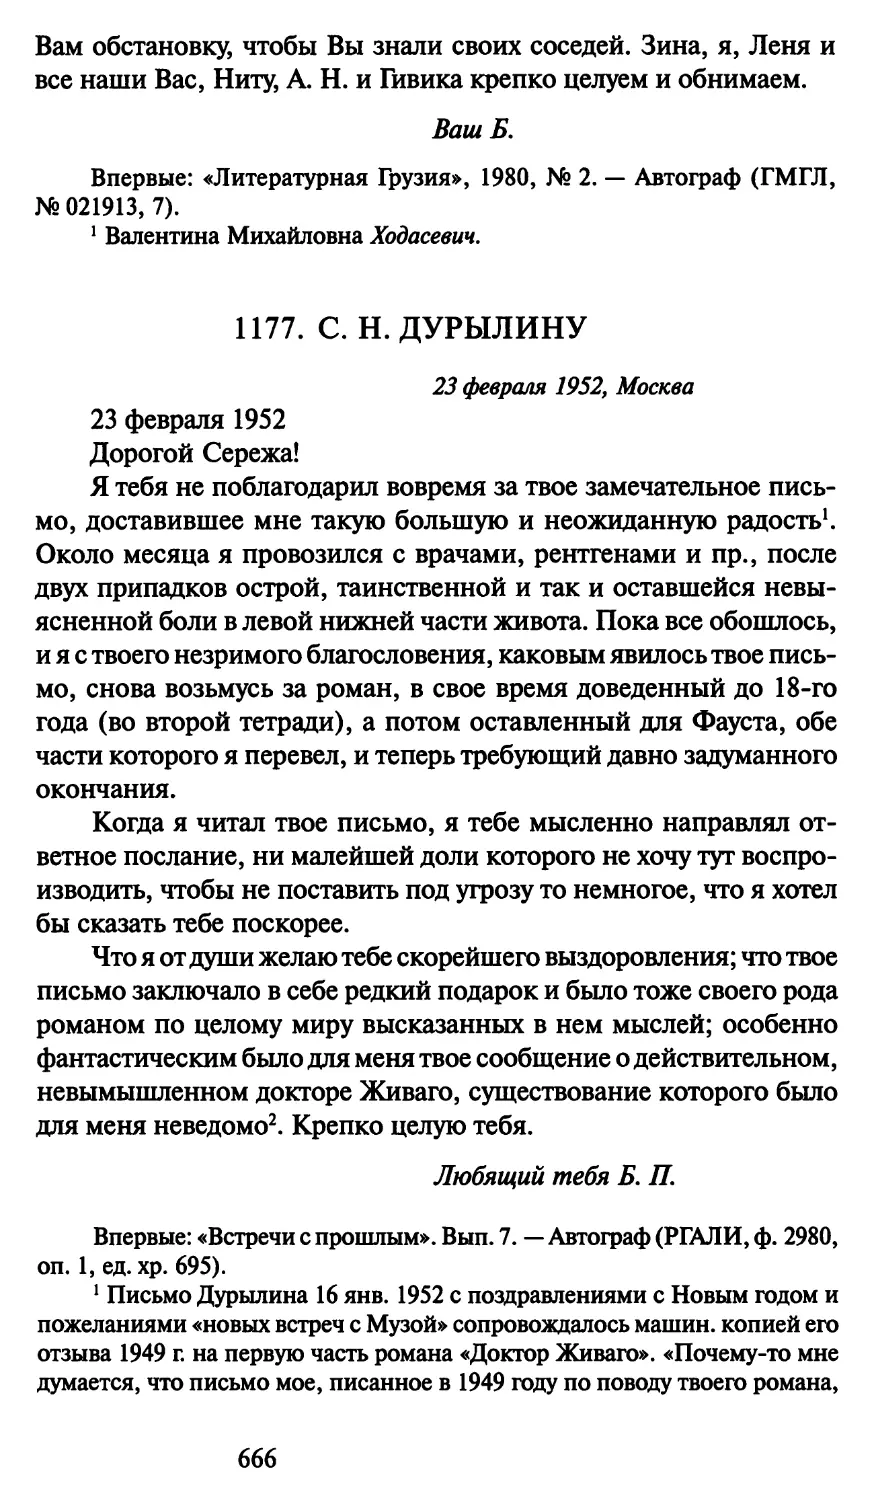 1177. С. Н. Дурылину 23 февраля 1952